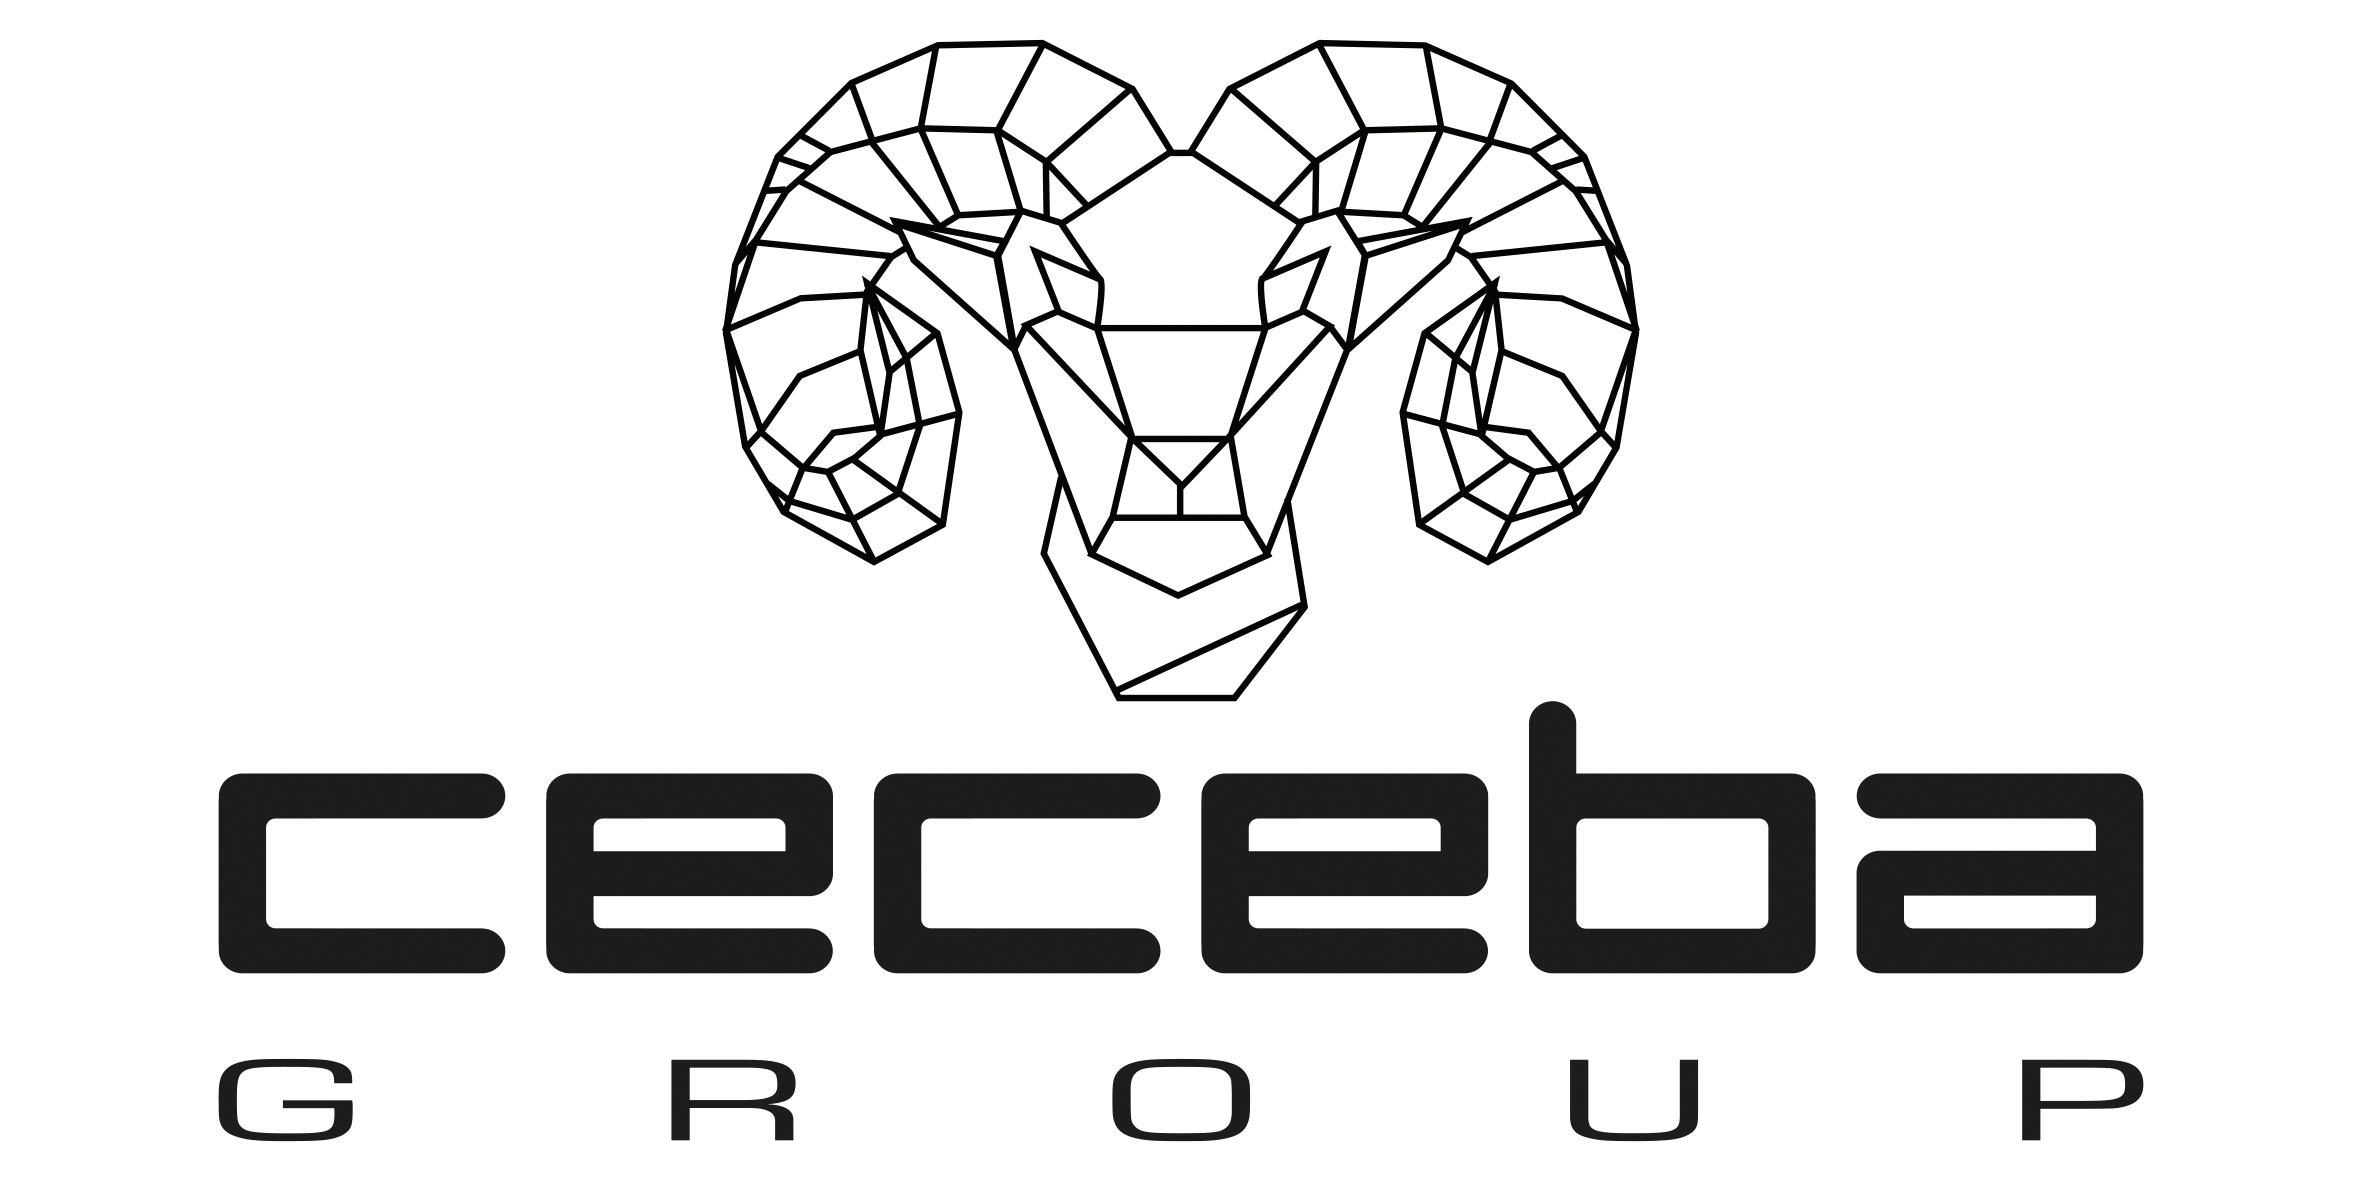 Brand logo for Ceceba